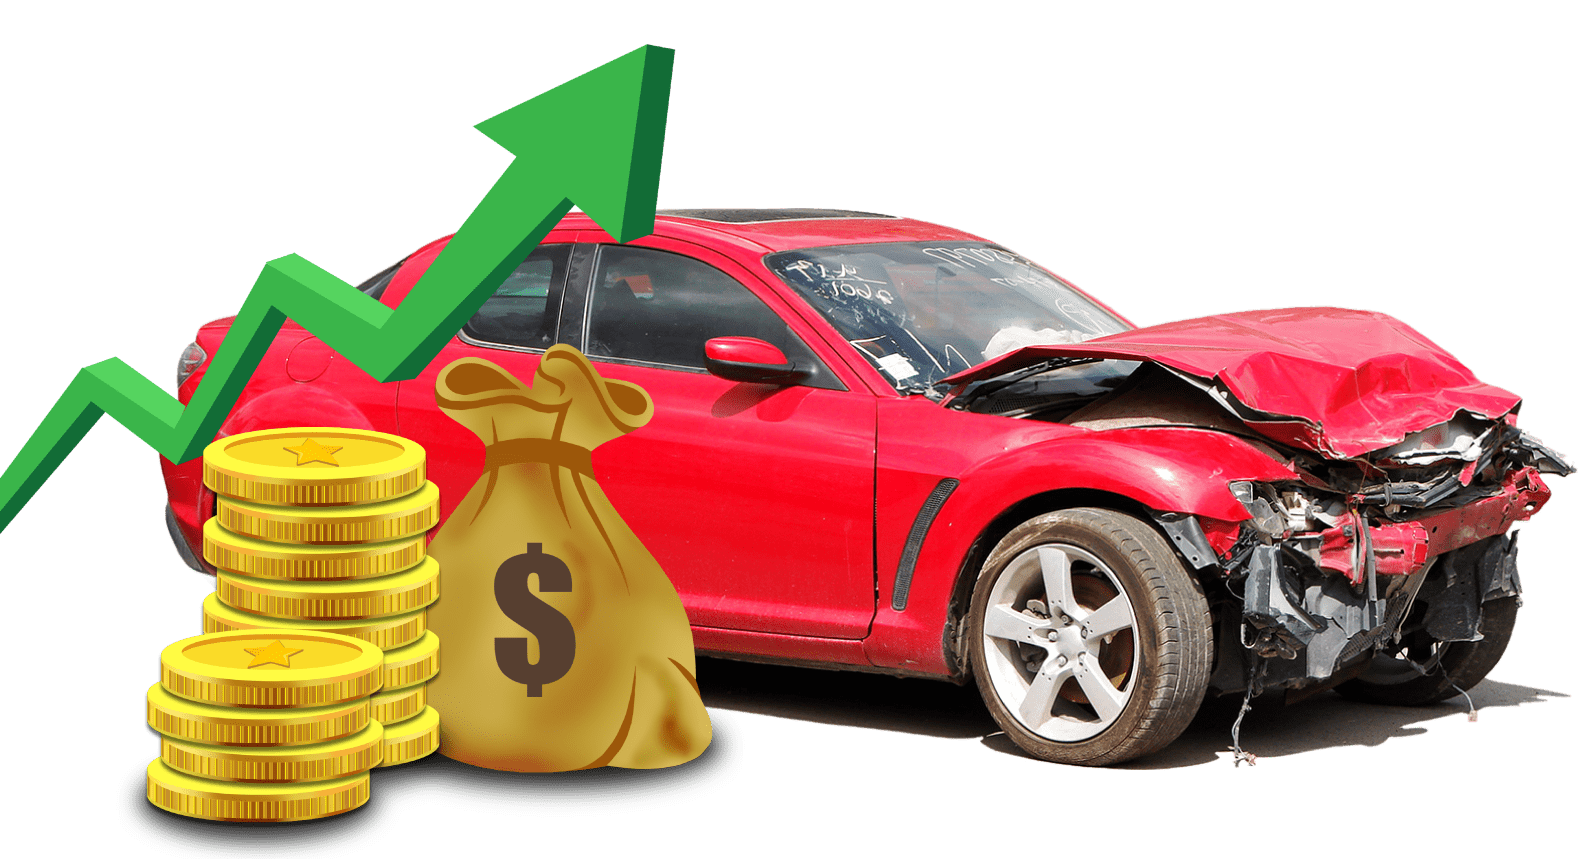  Cash For Cars Clontarf  